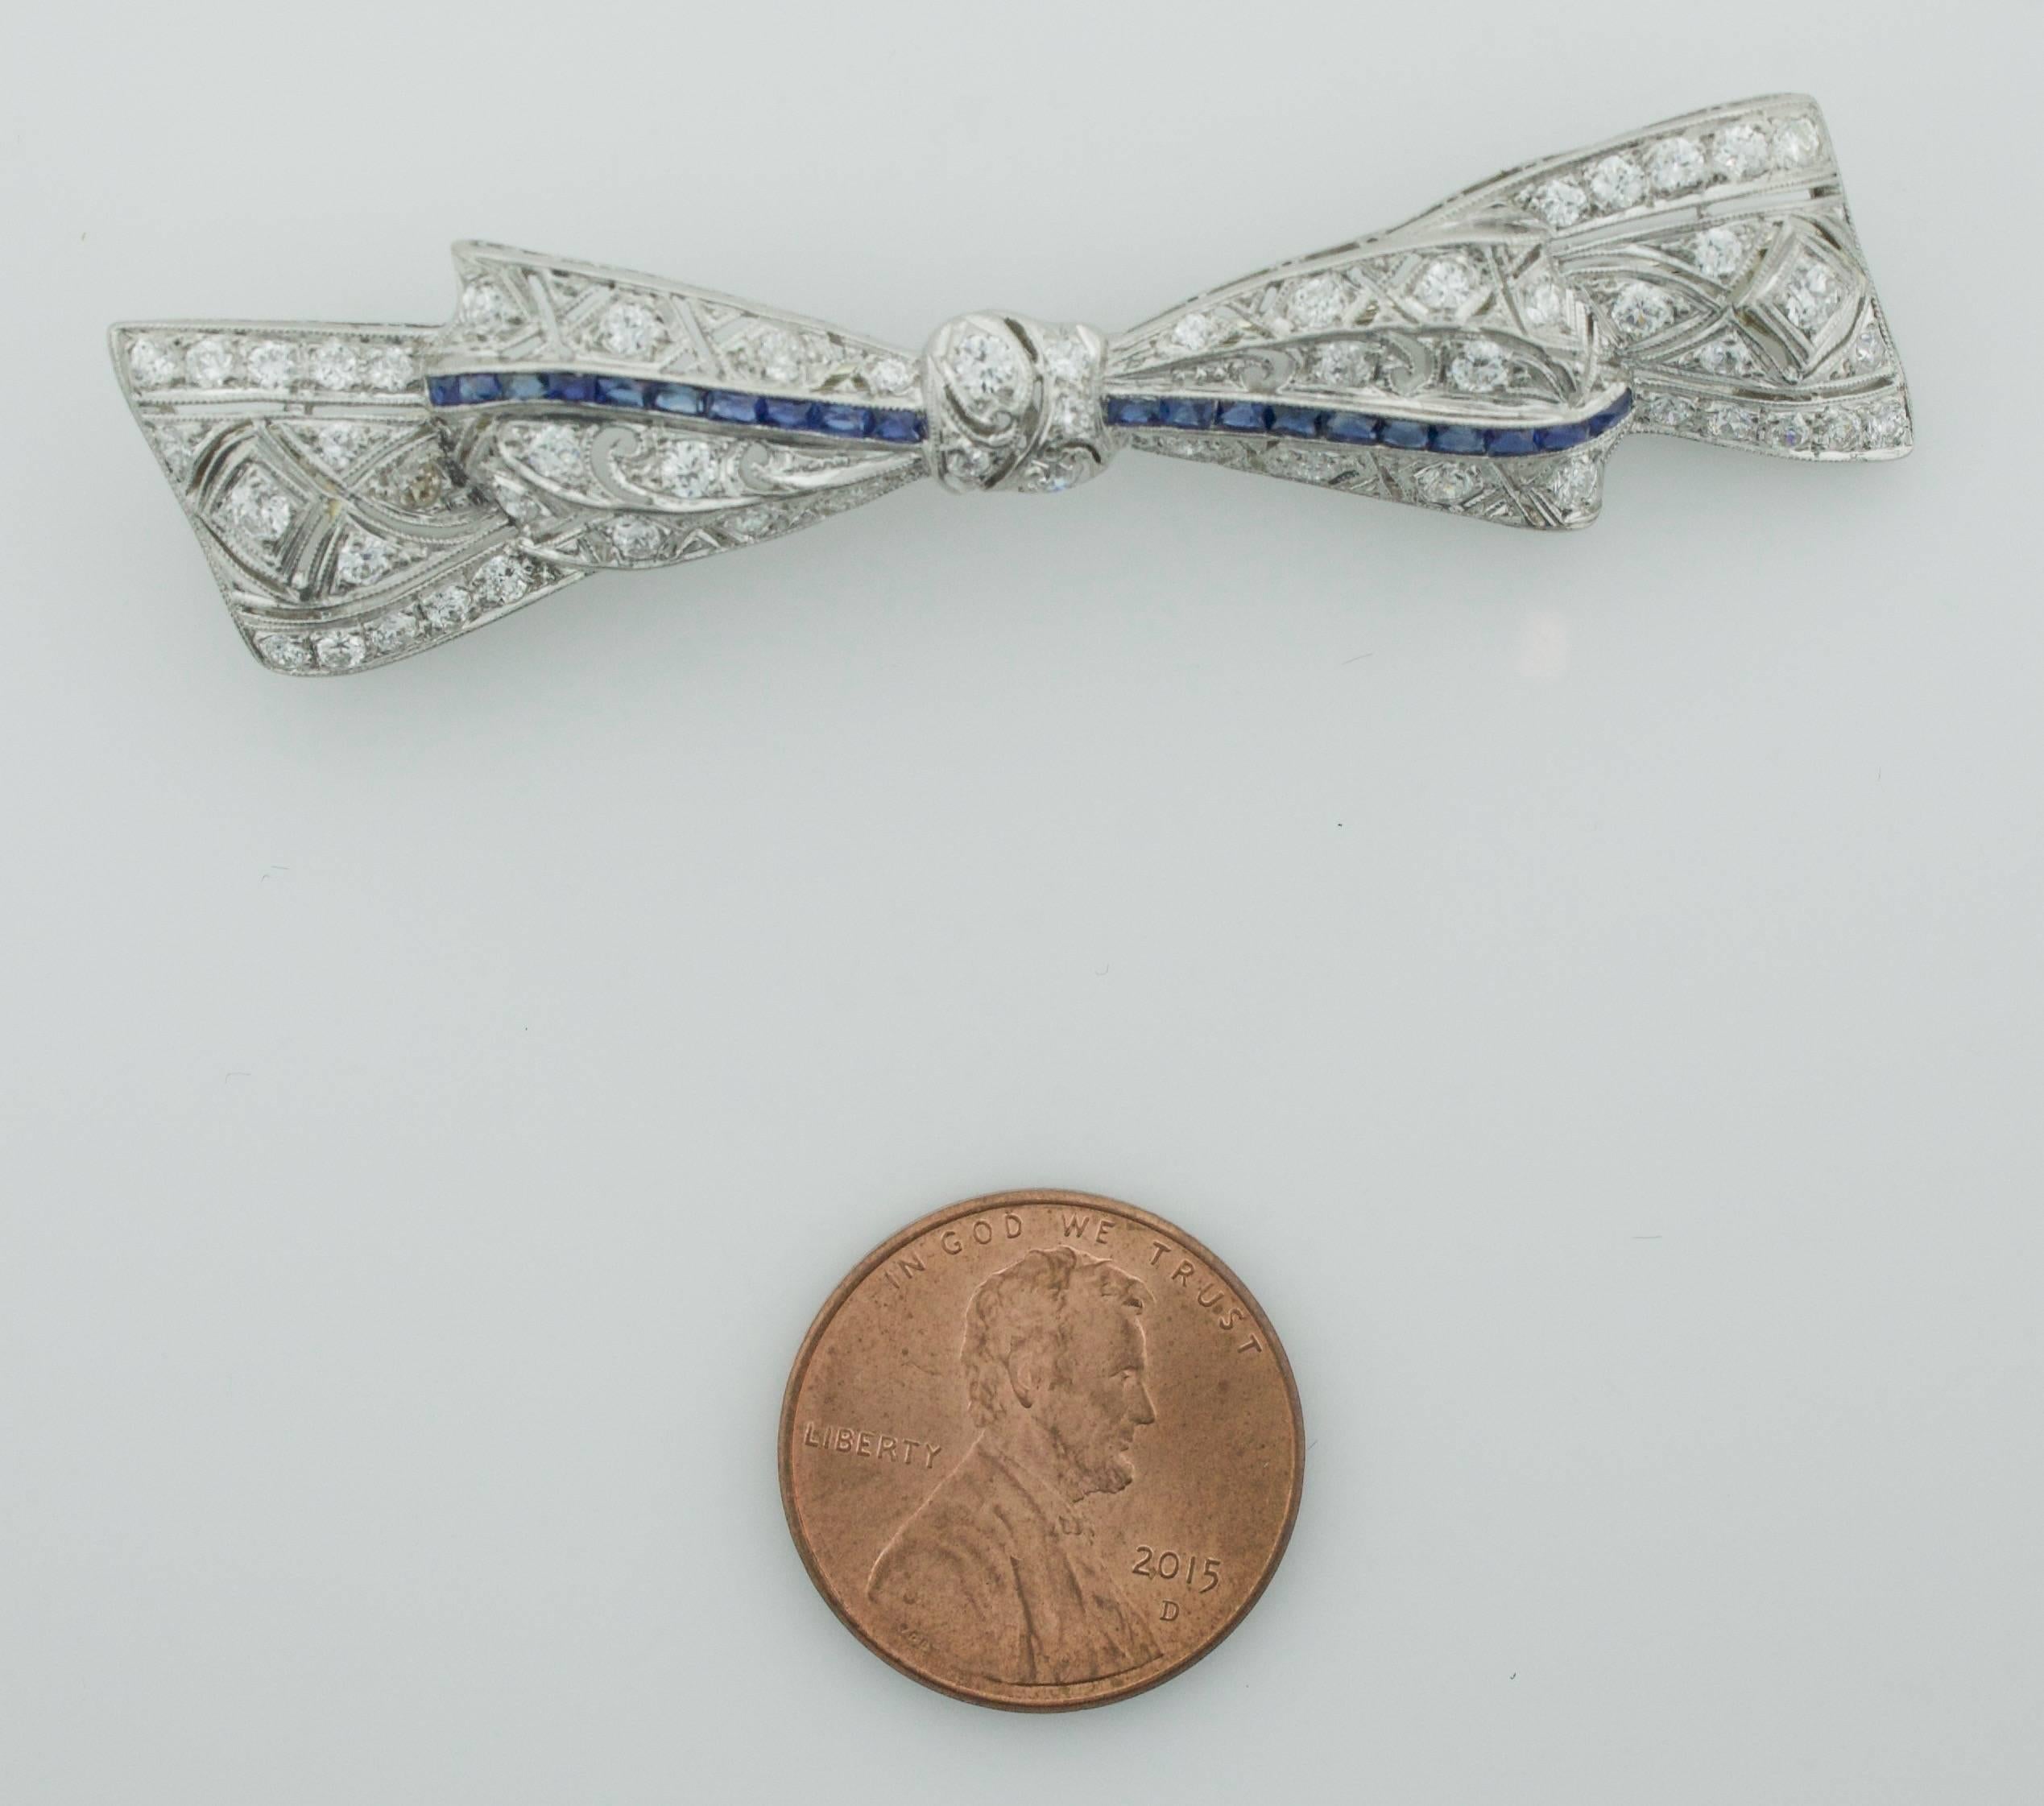 1920's Exquisite Platin Diamant und Saphir Schleife Brosche 
Vierundfünfzig alte europäische Diamanten mit einem Gewicht von 2,00 Karat (ungefähr)
Zwanzig kalibrierte Saphire im französischen Schliff mit einem Gewicht von etwa 0,70 Karat

Jede Farbe